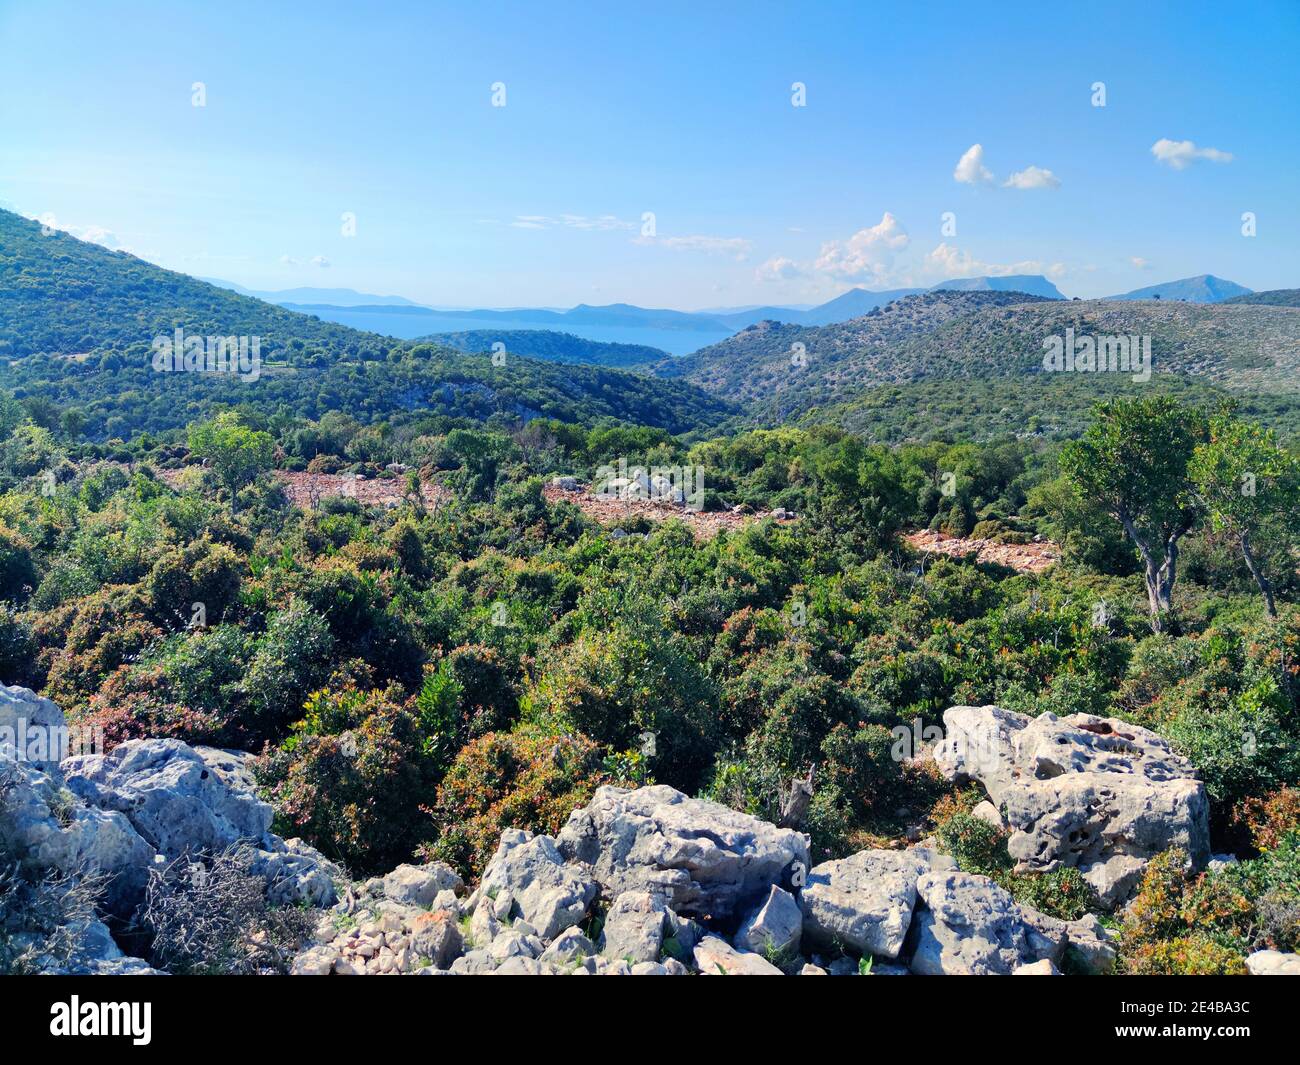 Il paesaggio montuoso con alberi tipici tra MITIKAS e Astakos, Grecia centrale. Foto Stock